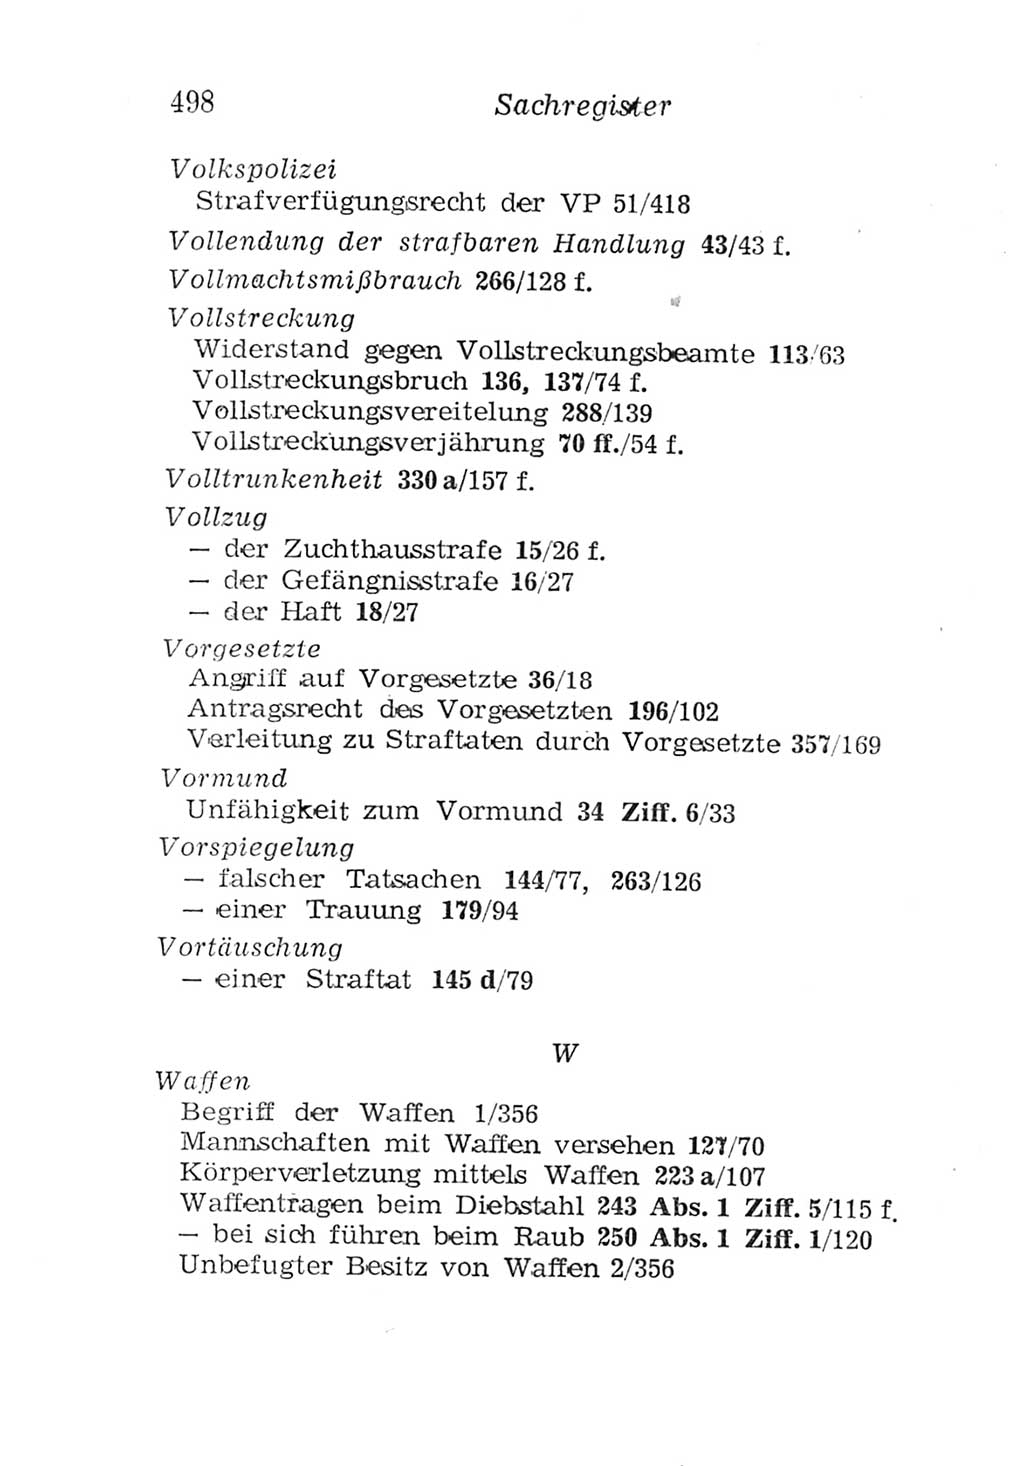 Strafgesetzbuch (StGB) und andere Strafgesetze [Deutsche Demokratische Republik (DDR)] 1957, Seite 498 (StGB Strafges. DDR 1957, S. 498)